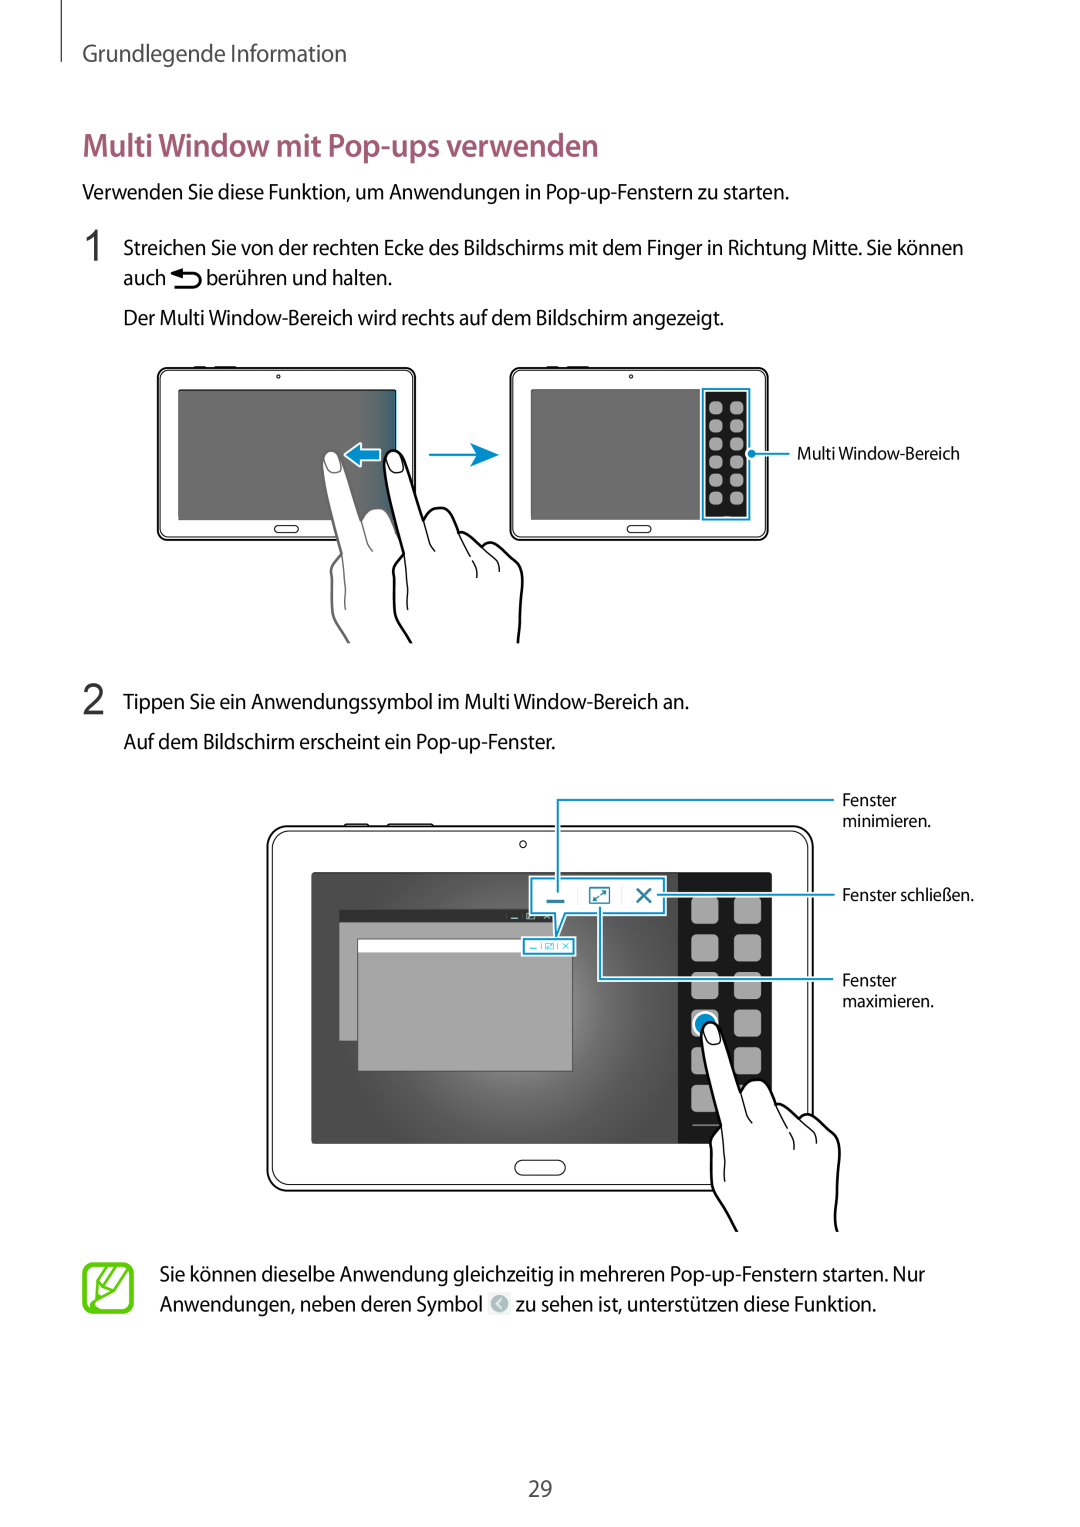 Samsung SM-P9000ZKAATO, SM-P9000ZWAATO Multi Window mit Pop-ups verwenden, Grundlegende Information, Fenster schließen 